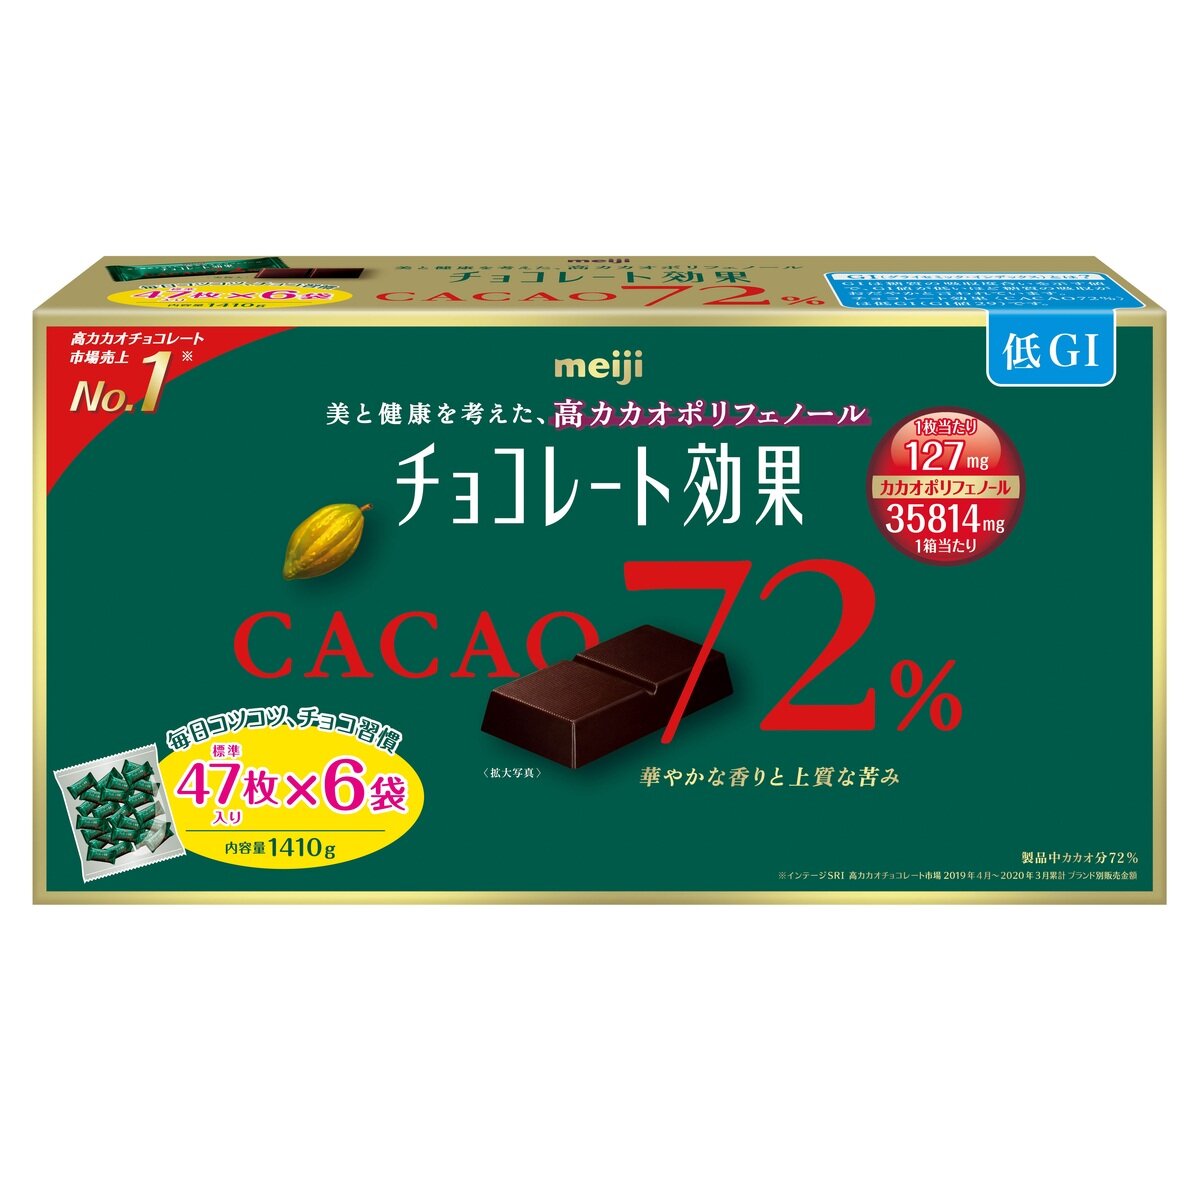 新入荷 流行 明治 チョコレート効果 カカオ 72% 47枚 X 6袋 1,410g 大容量